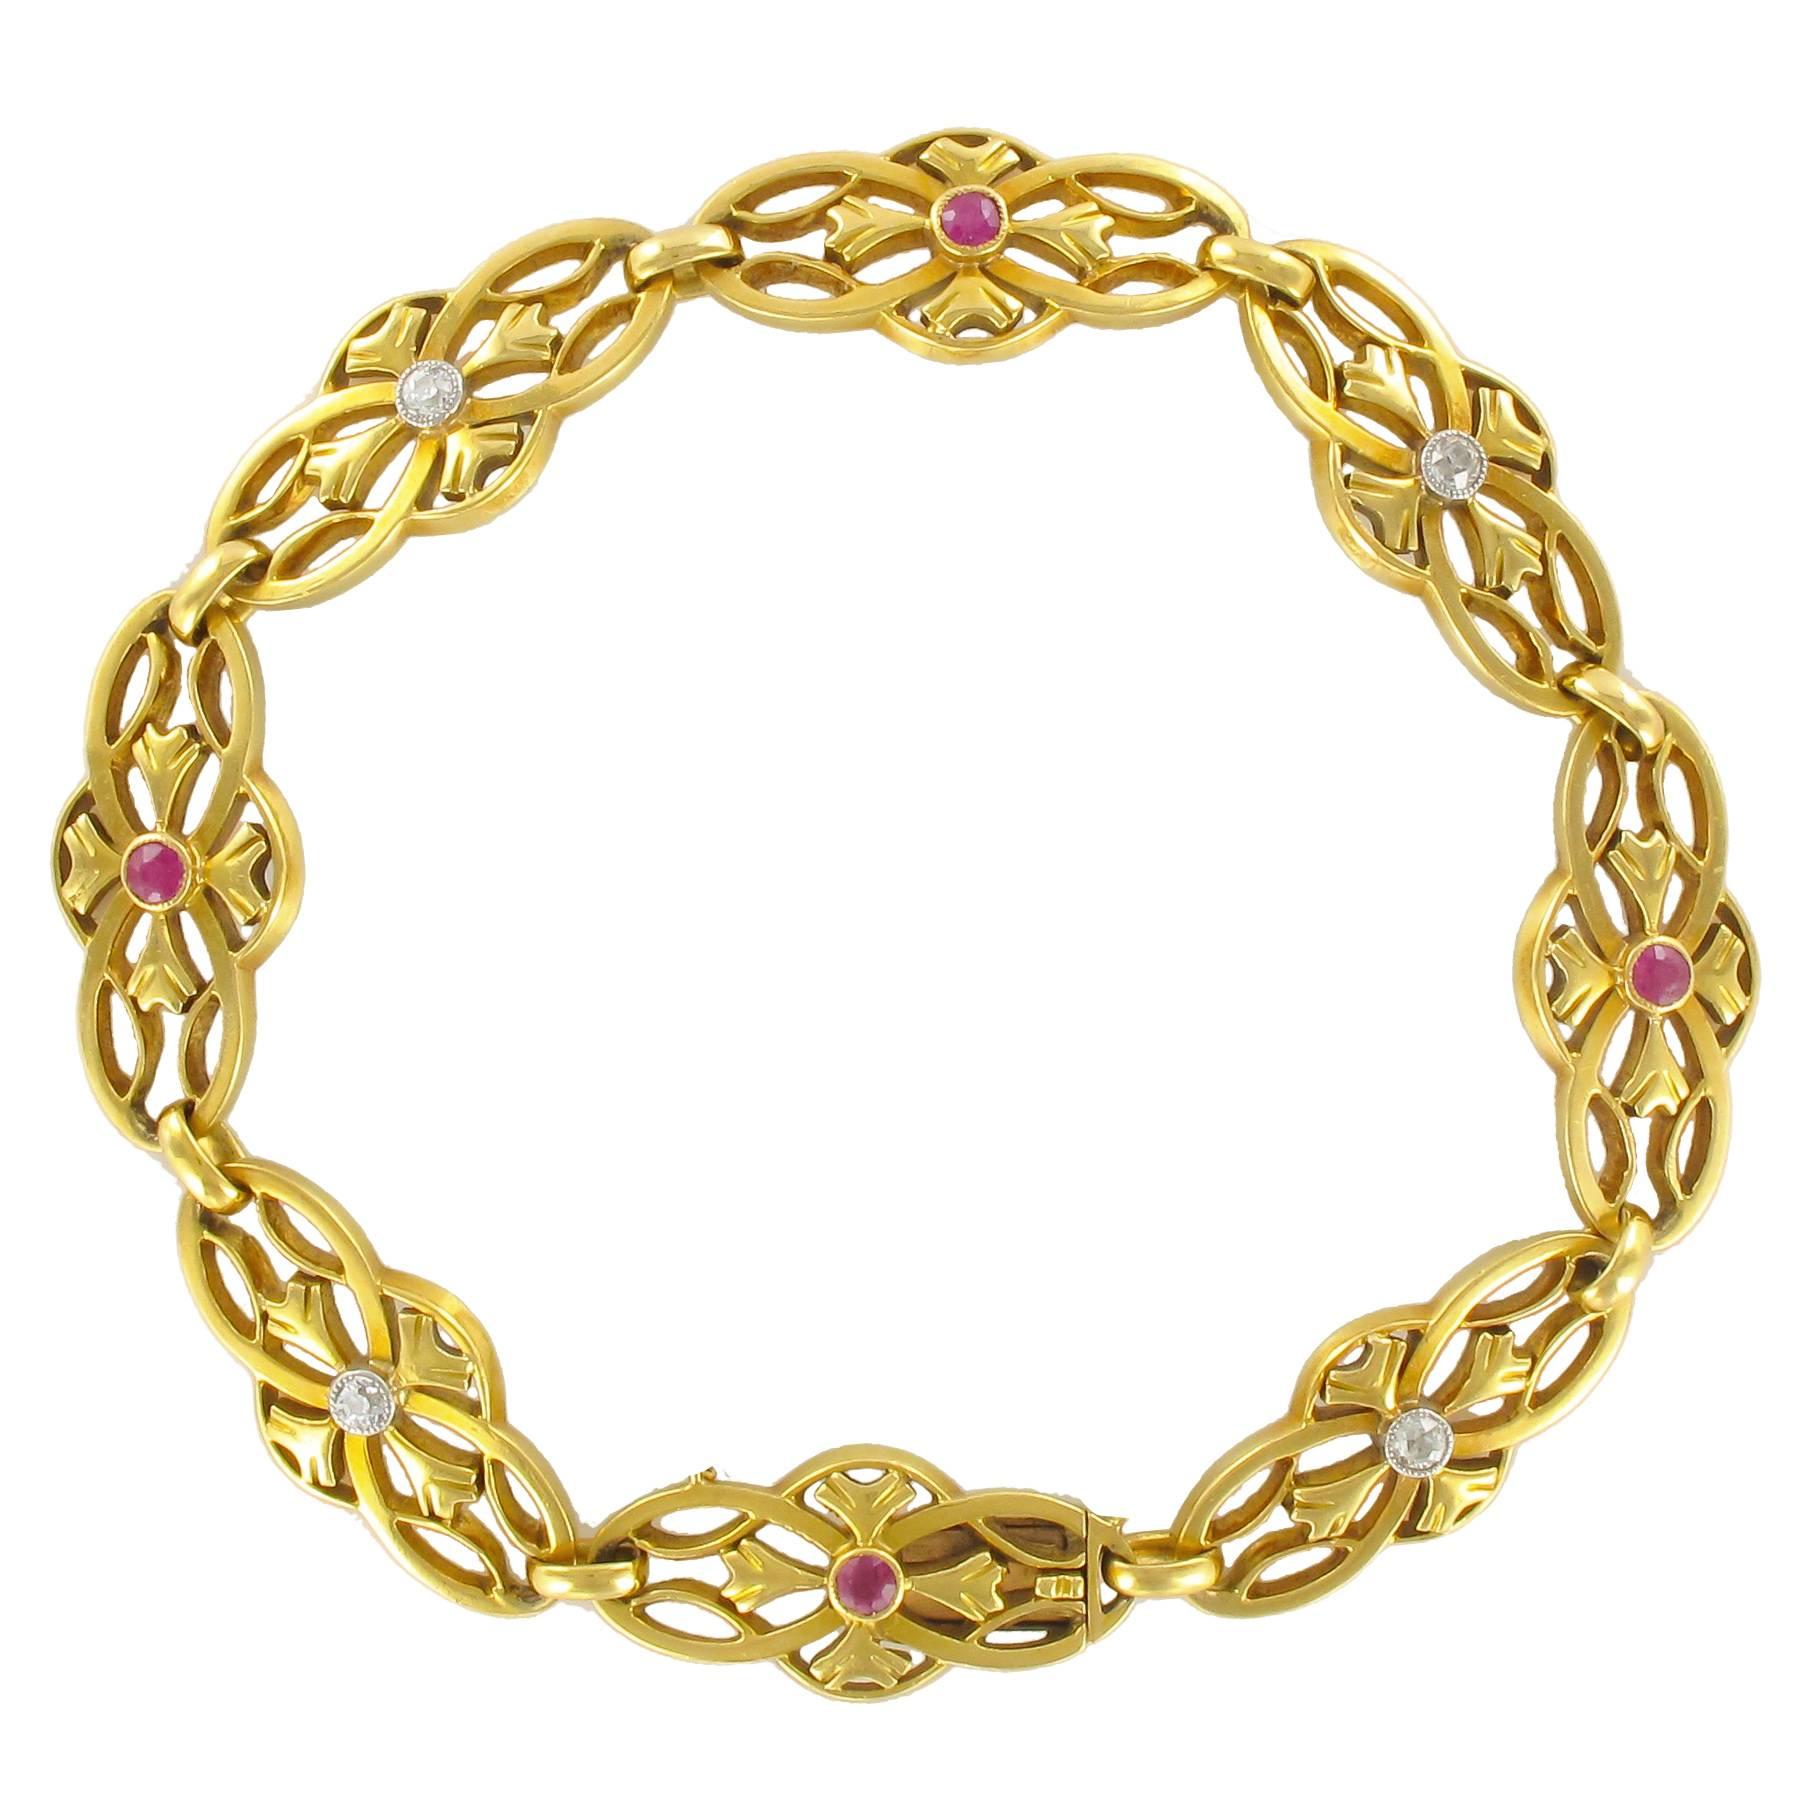 1880s Gold, Diamond and Ruby Bracelet